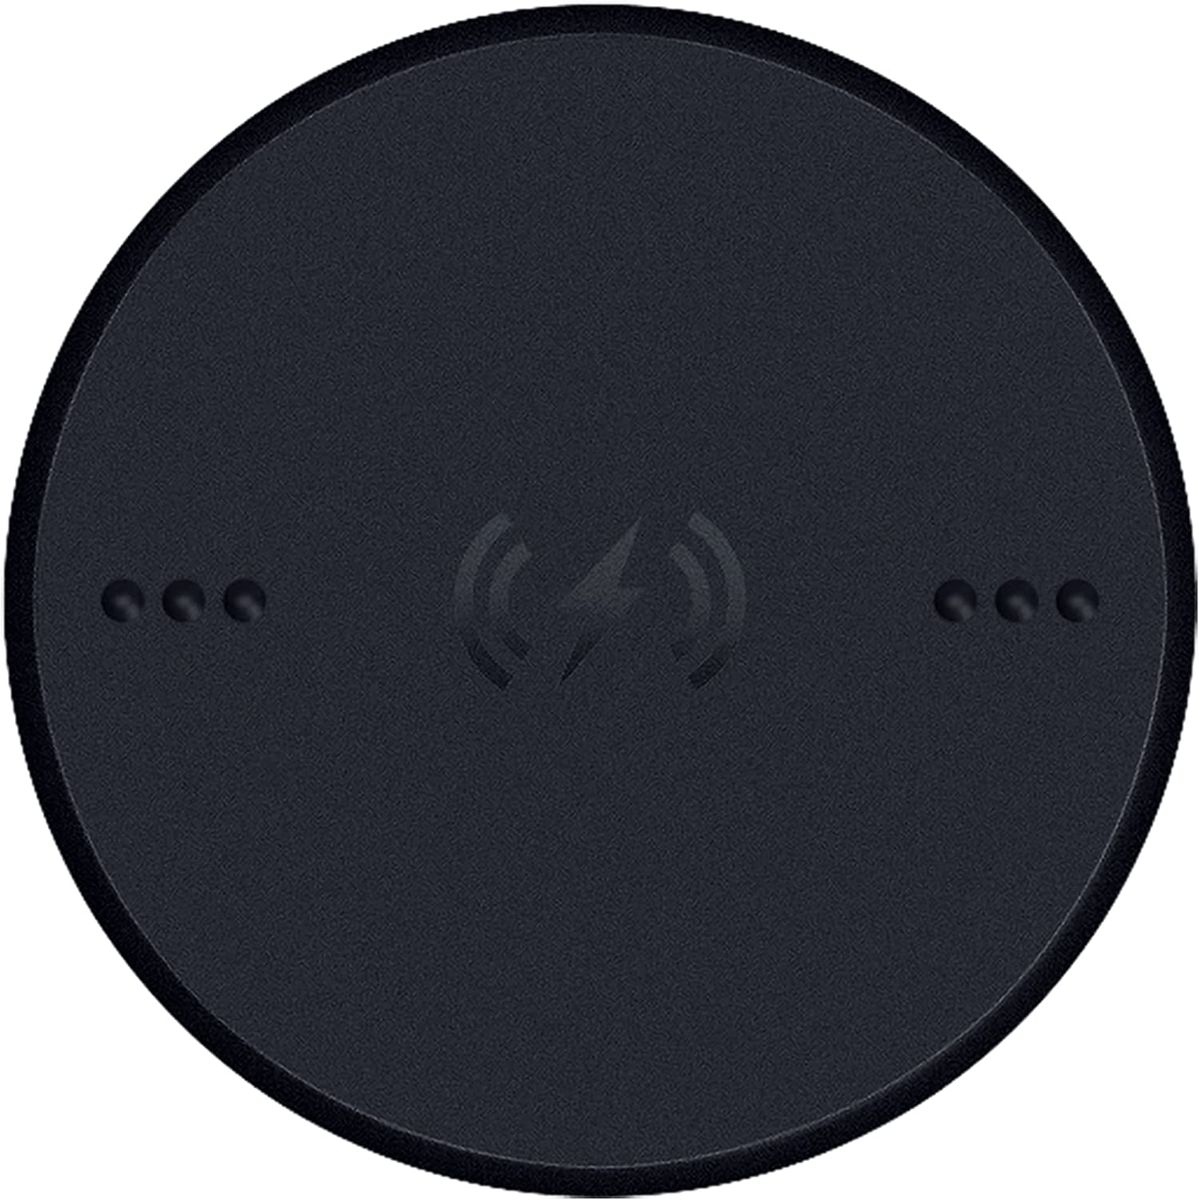 Razer Wireless Charging Puck Qi Lademodul für kompatible Razer Mäuse Black